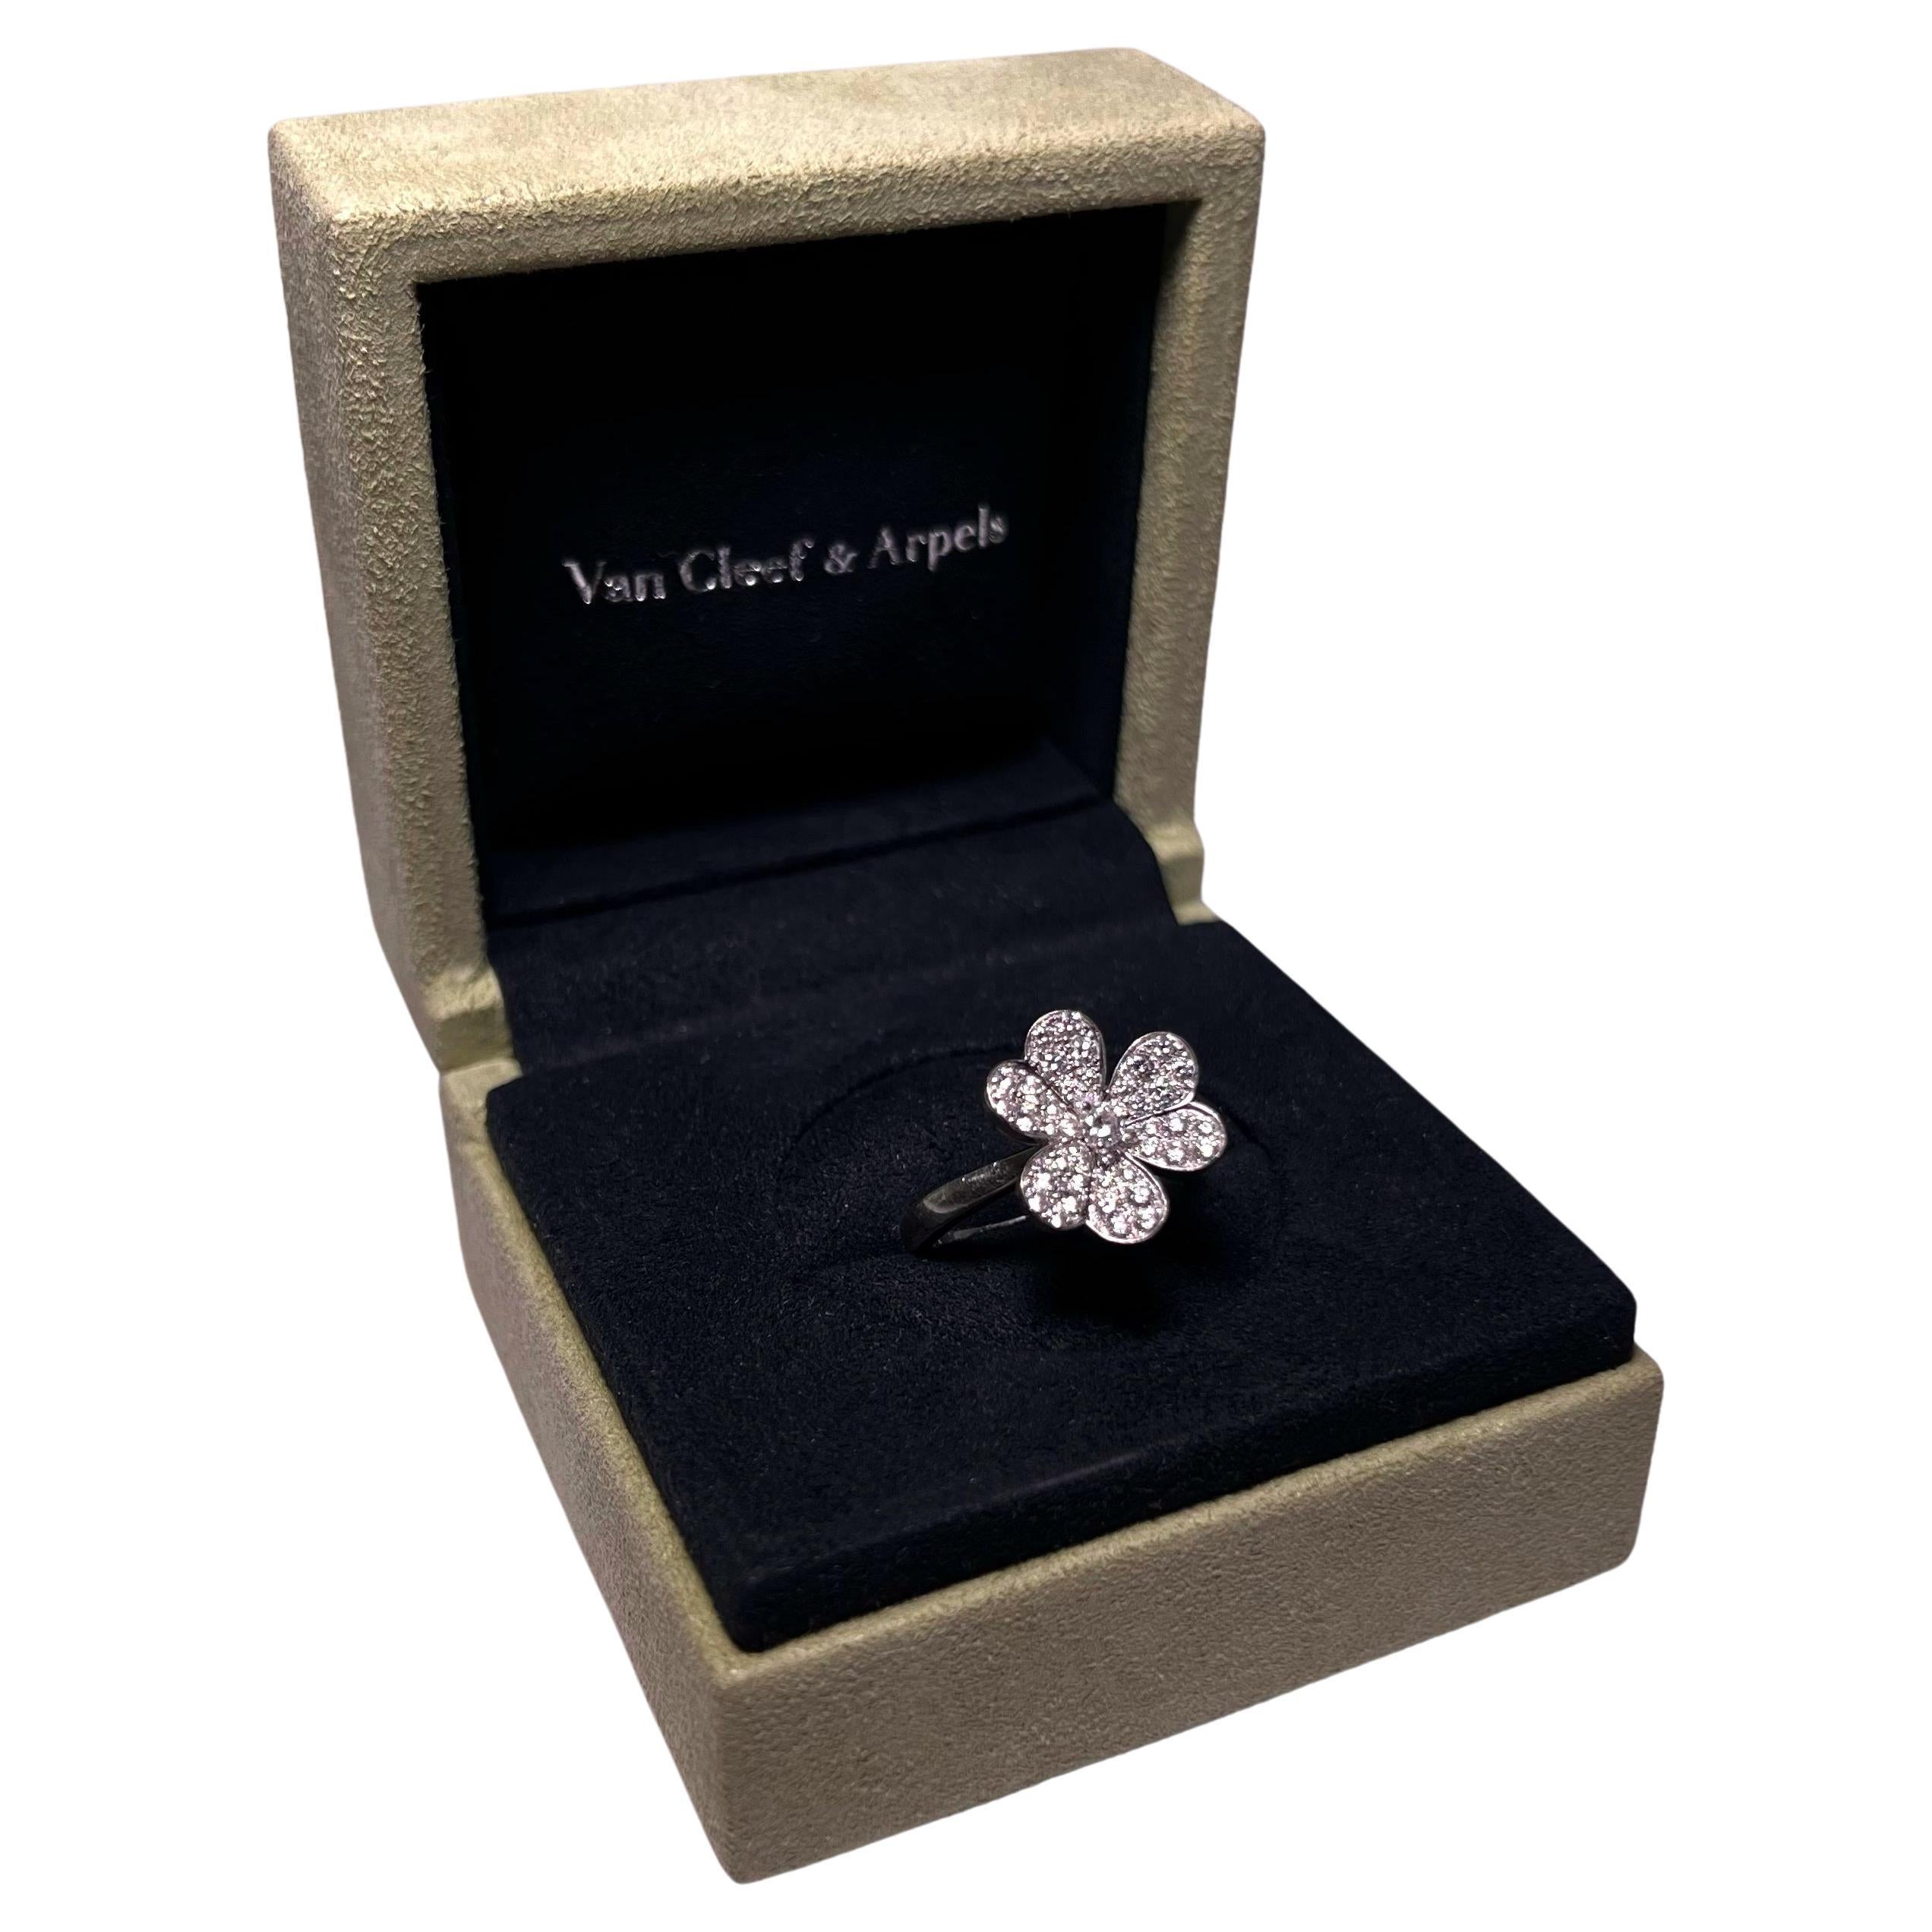 Van Cleef & Arpels Frivole Flower Diamond Ring in 18 Karat White Gold 3